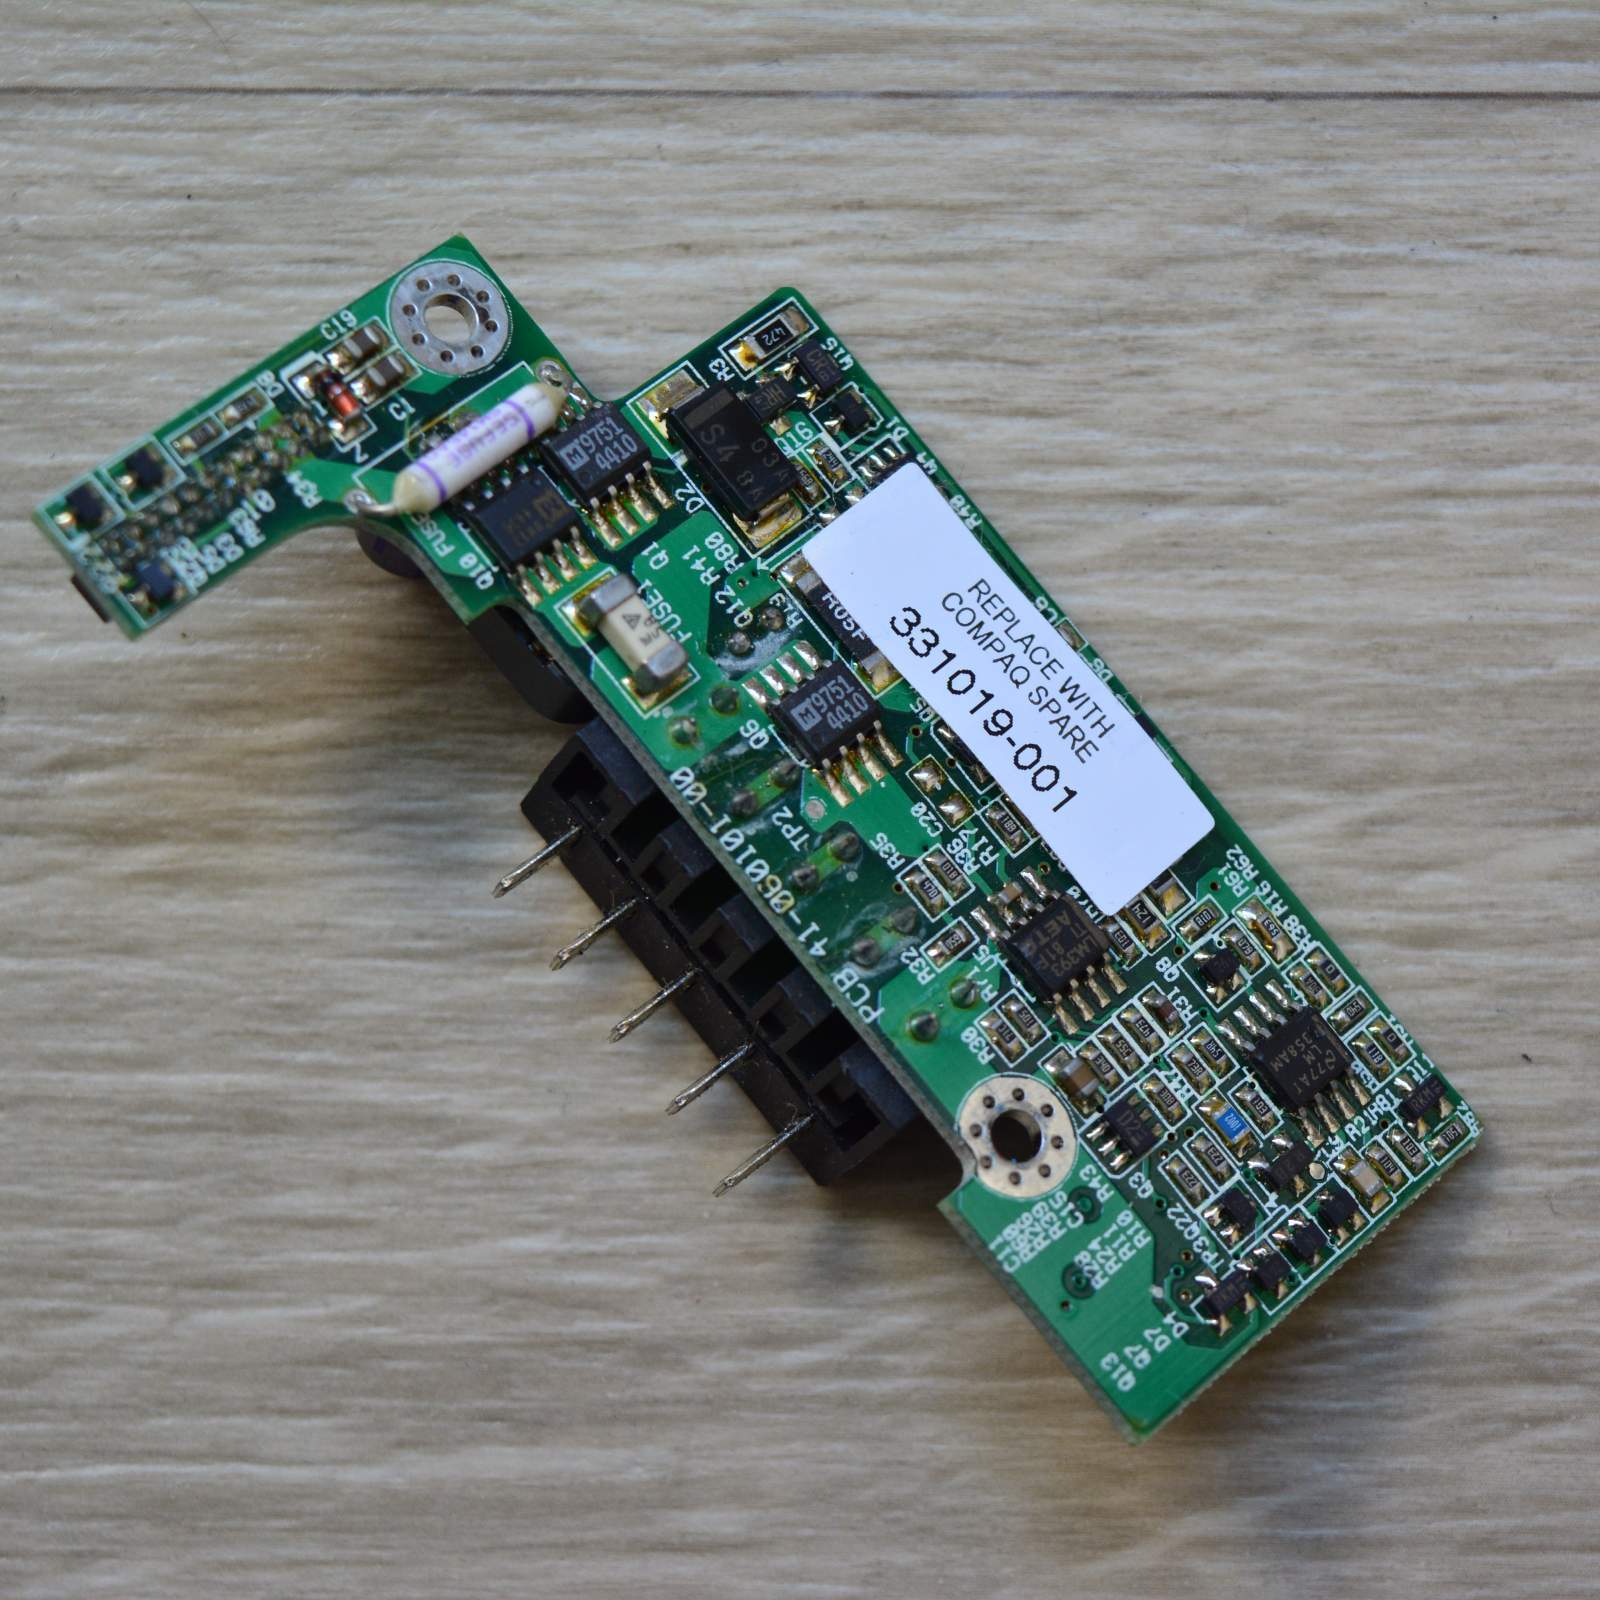 Original Compaq Presario Board Power Converter Battery 331019-001 V825D02112DD01